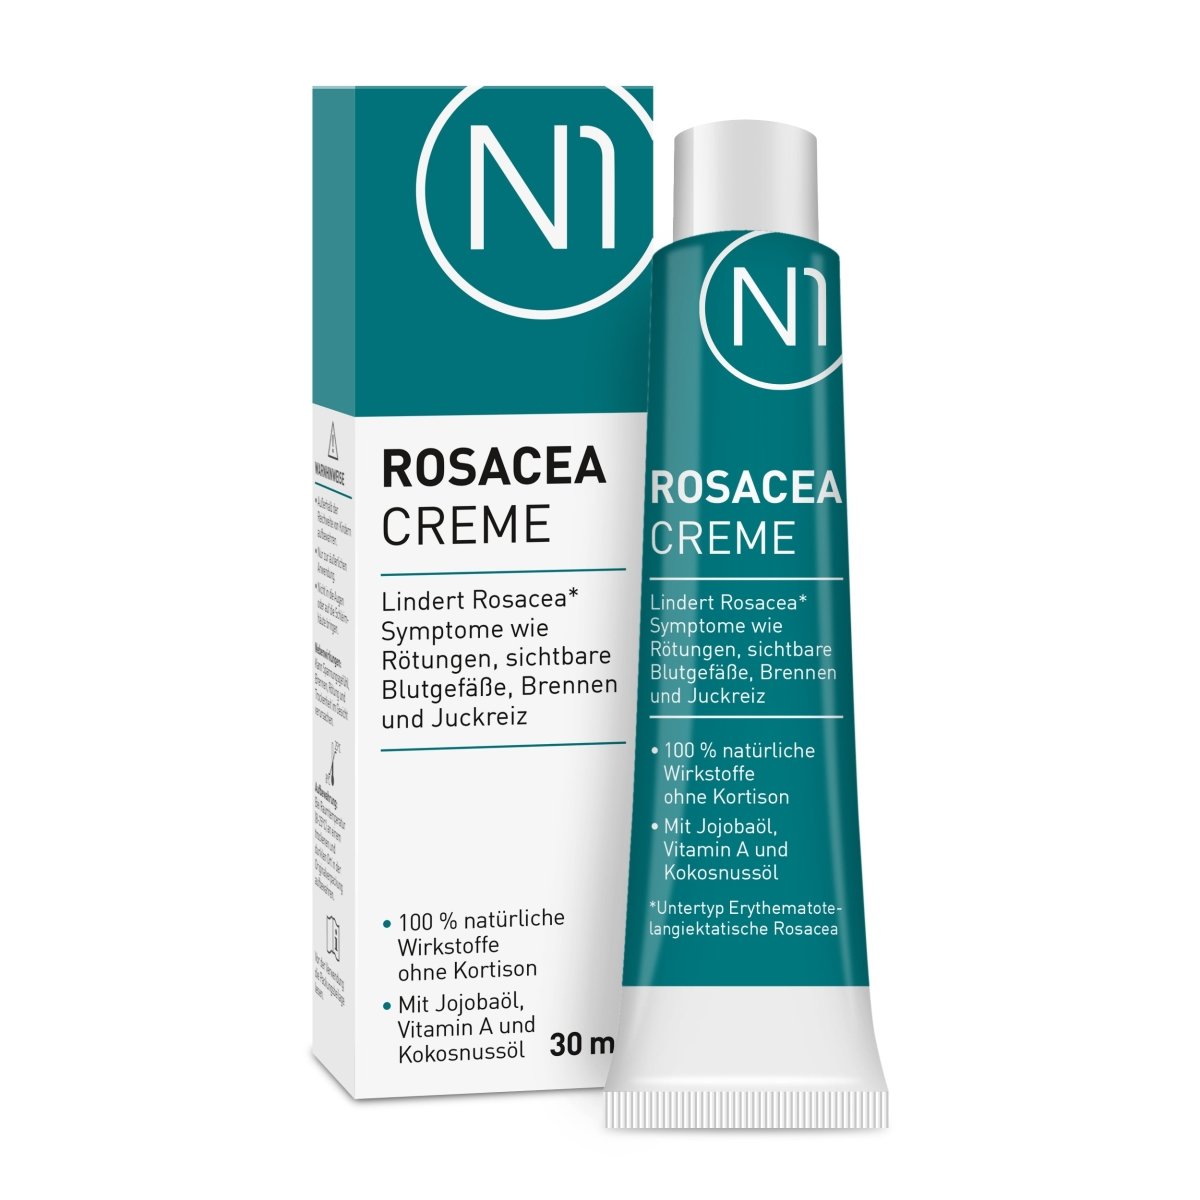 N1 Rosacea Creme, 30 ml - N1 - SHOP